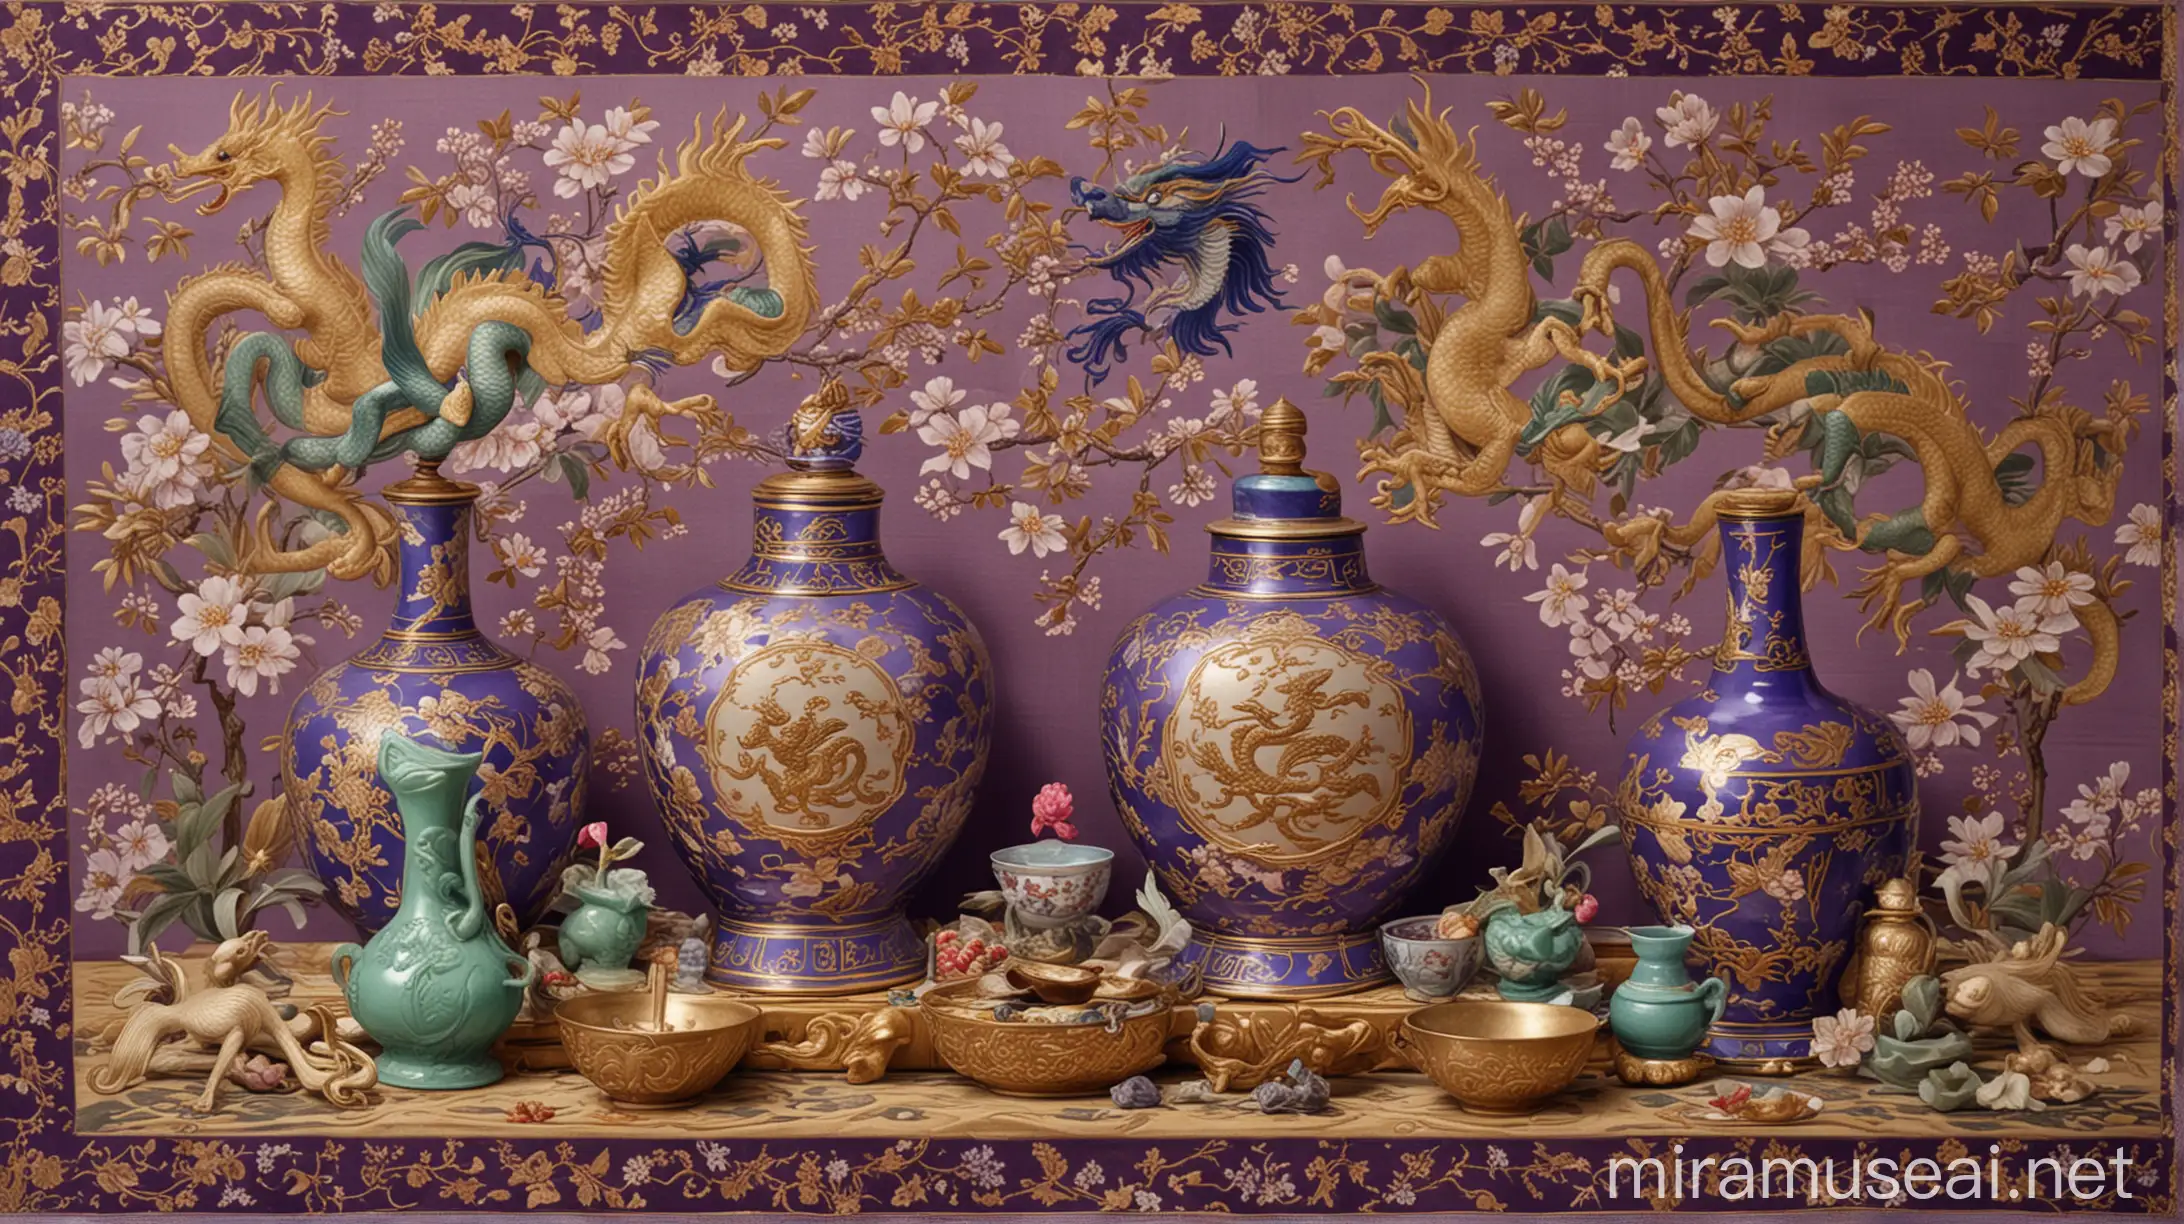 我将提供如下素材，请提取相关特征为我绘制一幅基调为紫金红色的反映17世纪中国与法国交往的画面，其中，左下角为清的图腾龙，点缀着玉杯、折扇、梅花碗、花鸟图挂毯、绸缎和青釉玉香水瓶，背景为孔子和成吉思汗，画面的右上角为法国皇室的象征百合花，点缀着西洋钟表和望远镜，背景为伏尔泰，龙与百合花相互呼应，交界处是太阳王路易十四致康熙的信和《中华帝国全志》